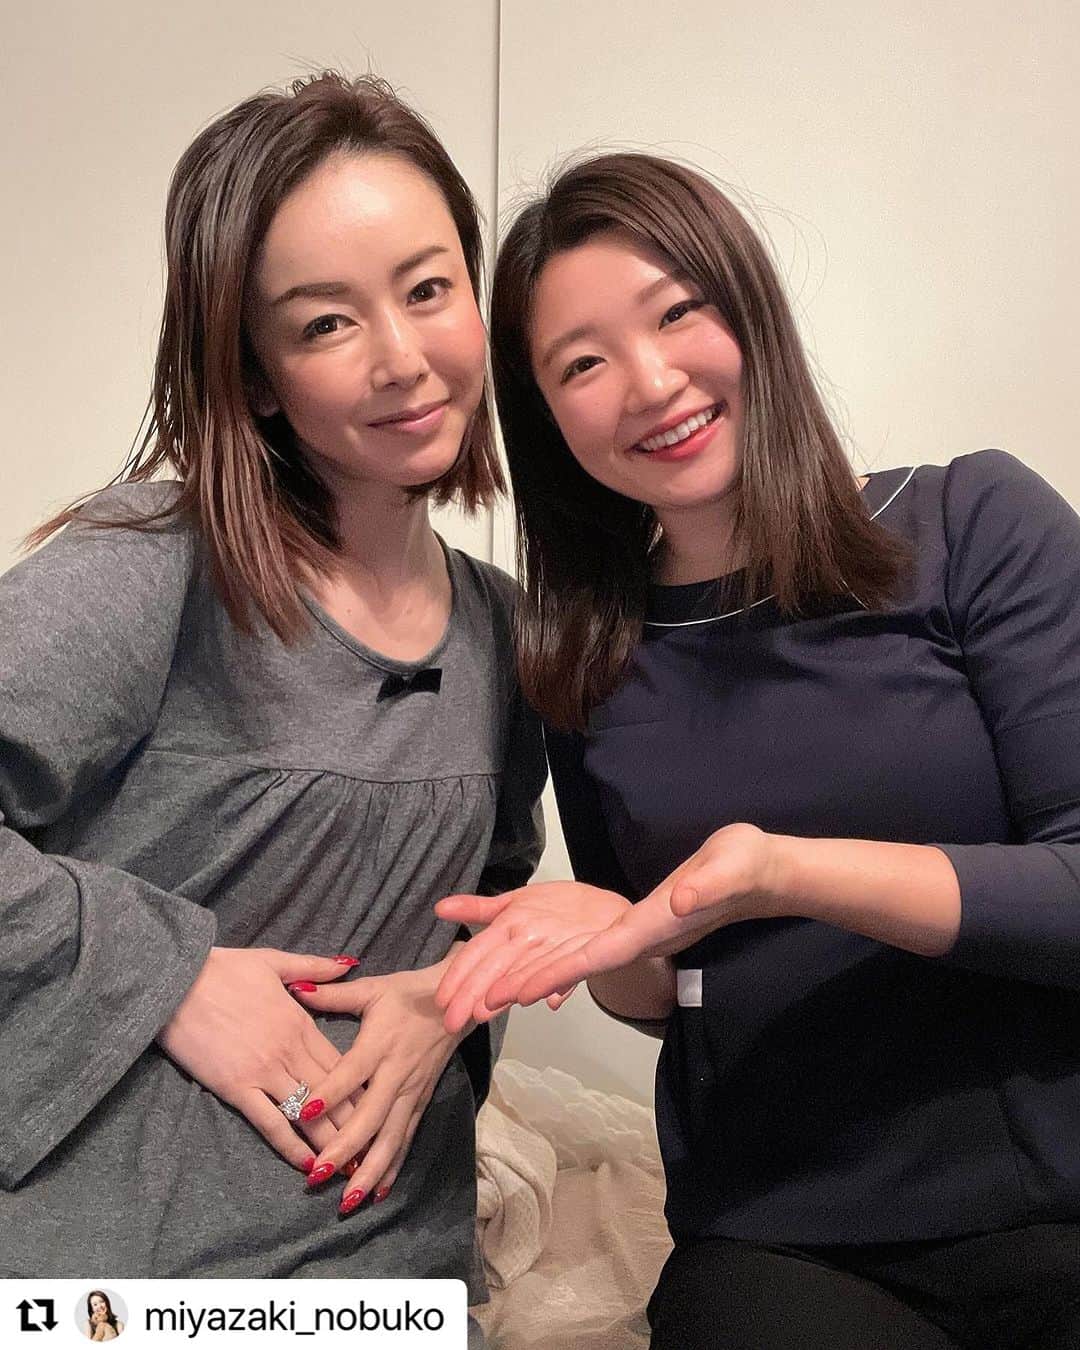 芦田桂子さんのインスタグラム写真 - (芦田桂子Instagram)「私のサロンで人気メニューの #ラグジュアリーよもぎ蒸し ®︎を妊活に取り入れ、様々な努力で43歳で妊娠、44歳出産した #宮﨑宣子 ちゃん @miyazaki_nobuko の投稿をシェアさせて頂きます❣️  母子共に元気で可愛いBabyが生まれてきてくれた奇跡は宣子ちゃんの努力を知っていたこともあり、本当に嬉しくて未だに胸が熱くなります✨ 妊活を頑張ってる方々に自然のチカラで少しでもお手伝いができれば私は幸せです☺ ・ ・・・ 朝になるとスヤスヤ寝てくれます。 今日も朝日を見て抱っこしてました。  妊活の質問について少しだけ😊  これが全て効果的だったかは分かりませんが、 私がやってきたことをまとめてみました。  ①私は体温が低く35.5℃が平均で、 体力もなくて疲れやすい体質でした。 なので体温を上げ筋肉をつけたくて @ozakifitnessgym  尾崎さんのパーソナルジムに妊活の2年前から 妊娠4ヶ月まで通っていました💪 産後ダイエットにまた復帰したいです☺️  ②冷え症だったので、妊活前からちょくちょく桂子さんのよもぎ蒸しに通っていました。 @keiko_ashida  @graces_beaute  本格的に移植する前にはレンタルして、桂子さんが生理の周期から排卵まで時期を考慮しながらオリジナルブレンドしてくれたものを自宅でテレビを見ながら2時間くらい座っていました。毎日子宮を直接温められるのでレンタルして頂けたことは本当にありがたく、プラスよもぎティーも飲んでました🫖🌿 今も身体を冷やさないように飲んでます🍵  ③なつみさんの腸活マッサージ🤲 @natulia.nn  最後の移植前の2ヶ月週一で通いました。 子宮を直接マッサージして、血流を良くし、かちこちだったお腹がふわふわになるんです☺️ もう少し早く知っていたら最初の移植でも効果的だったのでは？と思うほどお腹の周りの臓器から子宮まで少しずつじっくりマッサージして酸素を送り込んで柔らかくしてくれます。移植前日は2時間みっちりコースで臨みました👐  ④恵理子さんのハーブティーと酵素ドリンク🌿🫖 @erikokimura.sautedi.clin  @sautedi_official  @clin__official  恵理子さん自身が43歳で出産されていたので色々とアドバイスは頂いてました。自身も酵素ドリンク開発中に妊婦されたとのことで、私も最後の移植前から移植後の判定まで毎日2本がぶ飲みしました。また、同時に妊活中から、妊娠中、出産前、出産後、今は母乳が出やすくなるハーブとそれぞれの体調に応じて恵理子さんが調合したオリジナルブレンドを飲んでました。 あと骨盤の歪み矯正も駆け込みで2回だけ恵理子さんからご紹介頂いてカイロに行きました。 そして妊活始めてからは恵理子さんからもらった赤富士を額に入れて神棚に飾っていました。神頼み🙏✨  ⑤あとは気分転換を大事にしてました😆 不妊治療は続けると精神的にも肉体的にも辛かったので、 1度やると2ヶ月あけたり、気分が乗らないときはもっと開けて前向きなテンションになるまでおやすみしました。 休み休みだったから続けられたように思います。  私はできなくても仕方がない年齢だったので、 とりあえず妊活できるチャンスを頂けたことに感謝して、 また、周りに妊活に詳しい友人に恵まれたことでアドバイスを頂きながらできることを無理なくやってみようくらいのテンションで自分を追い込まないように気をつけていました。  全部を同時期にやっていたわけではなく、 これやったから、次はこれやってみようかなと 当時はそこまで色々とやってたつもりはなかったので、 ゆるく楽しんでやってたように思います。  妊娠中にたくさんご質問を頂いていたのですが、 無事に産まれてきてくれるか分からなかったので、 このタイミングで妊活中にやってきたことをまとめてみました。  やれるだけやってきたので最後の移植のときはこれで終わっても納得できる心境に達していたので後悔はなかったです。  寝顔を見ていると本当に皆さんのおかげだなとしみじみ感謝しかありません。  #妊活 #43歳 #出産 #44歳 #高齢出産  #産後2ヶ月」11月28日 13時54分 - keiko_ashida